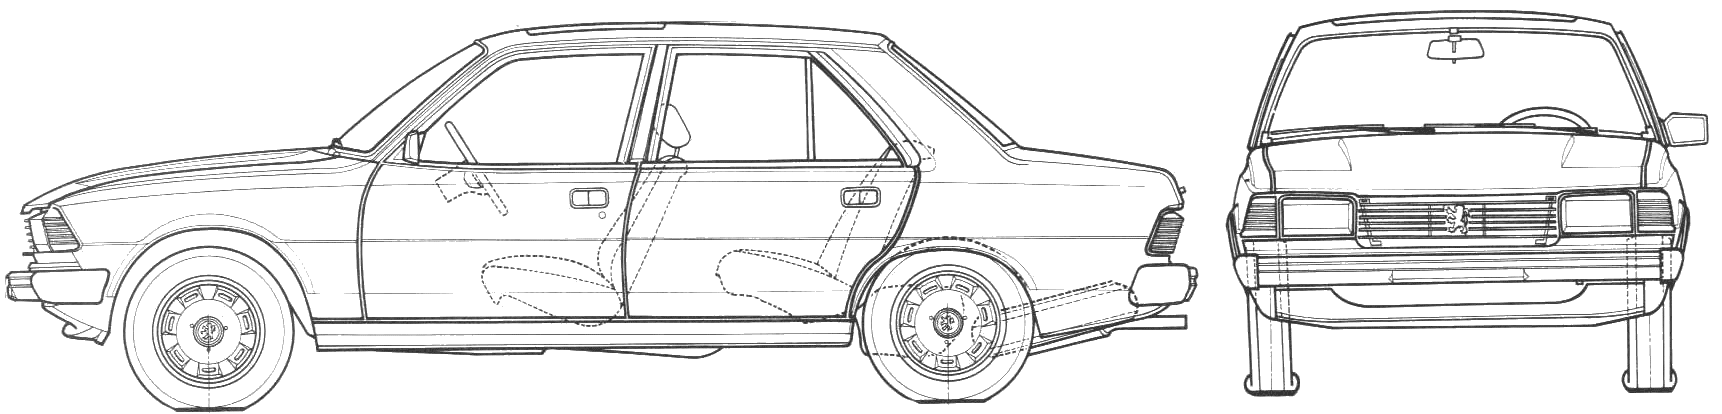 1977 Peugeot 305 Sedan blueprint